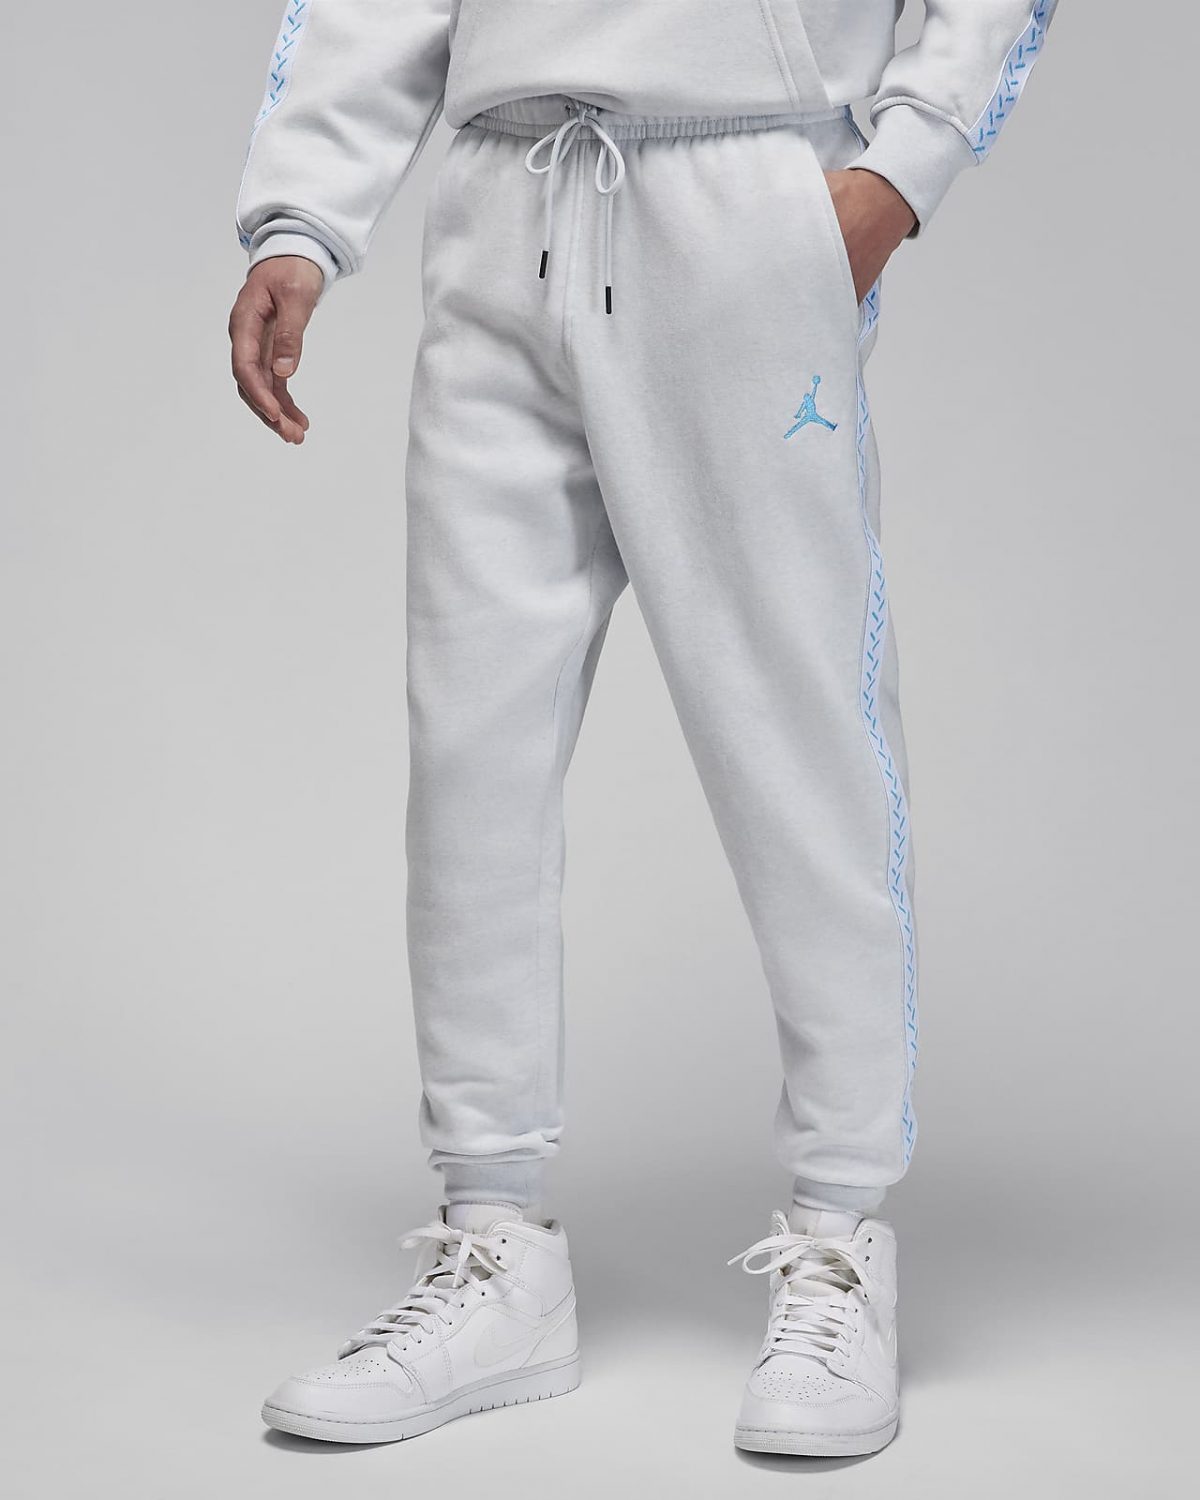 Мужские брюки nike Jordan Flight MVP синие фото